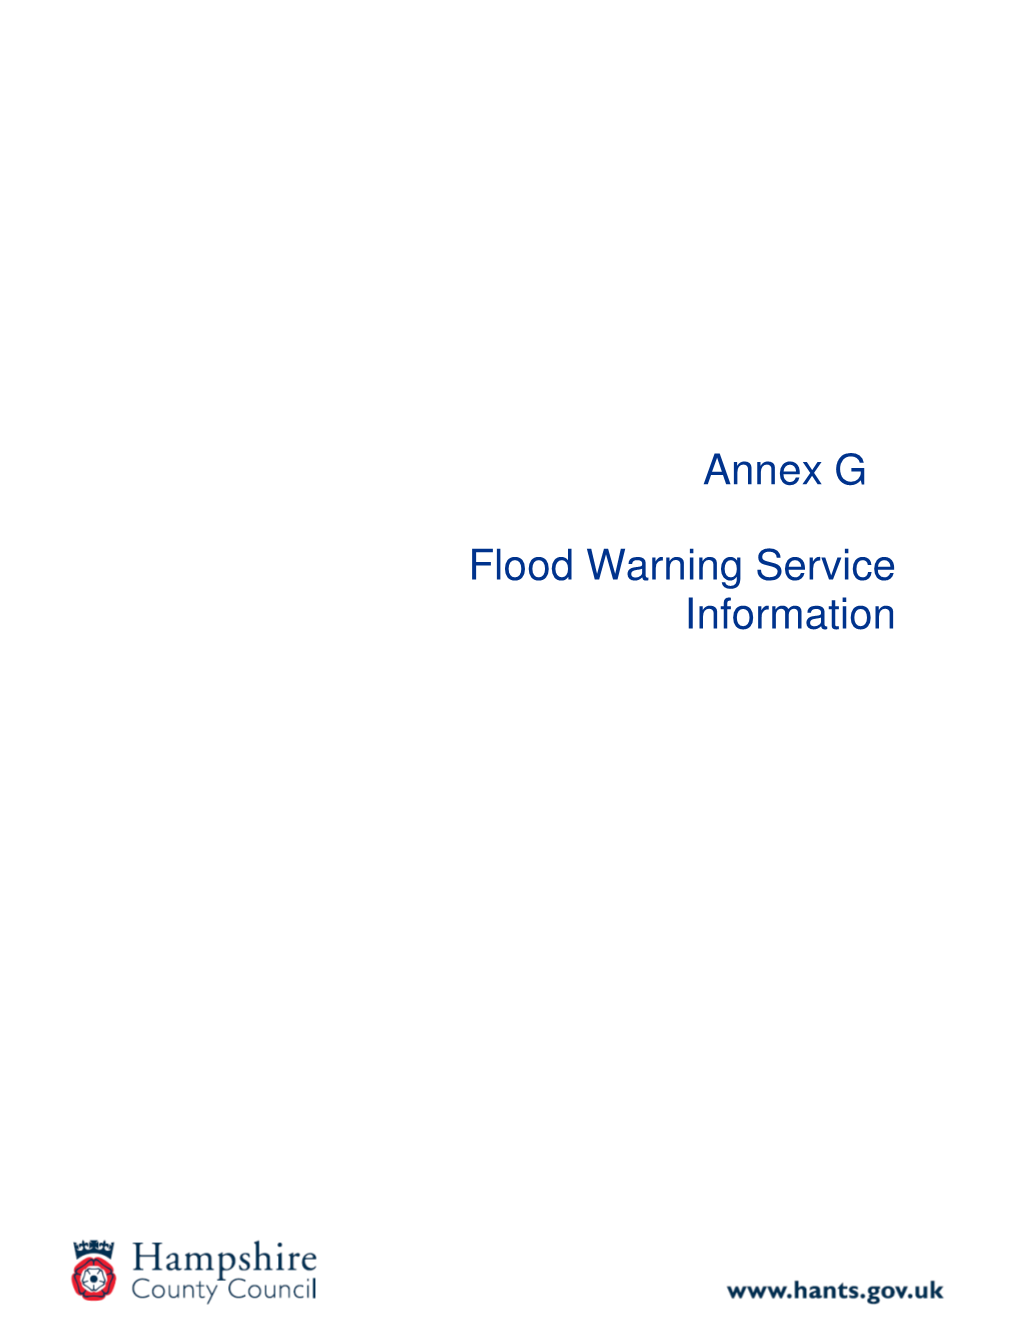 Annex G Flood Warning Service Information